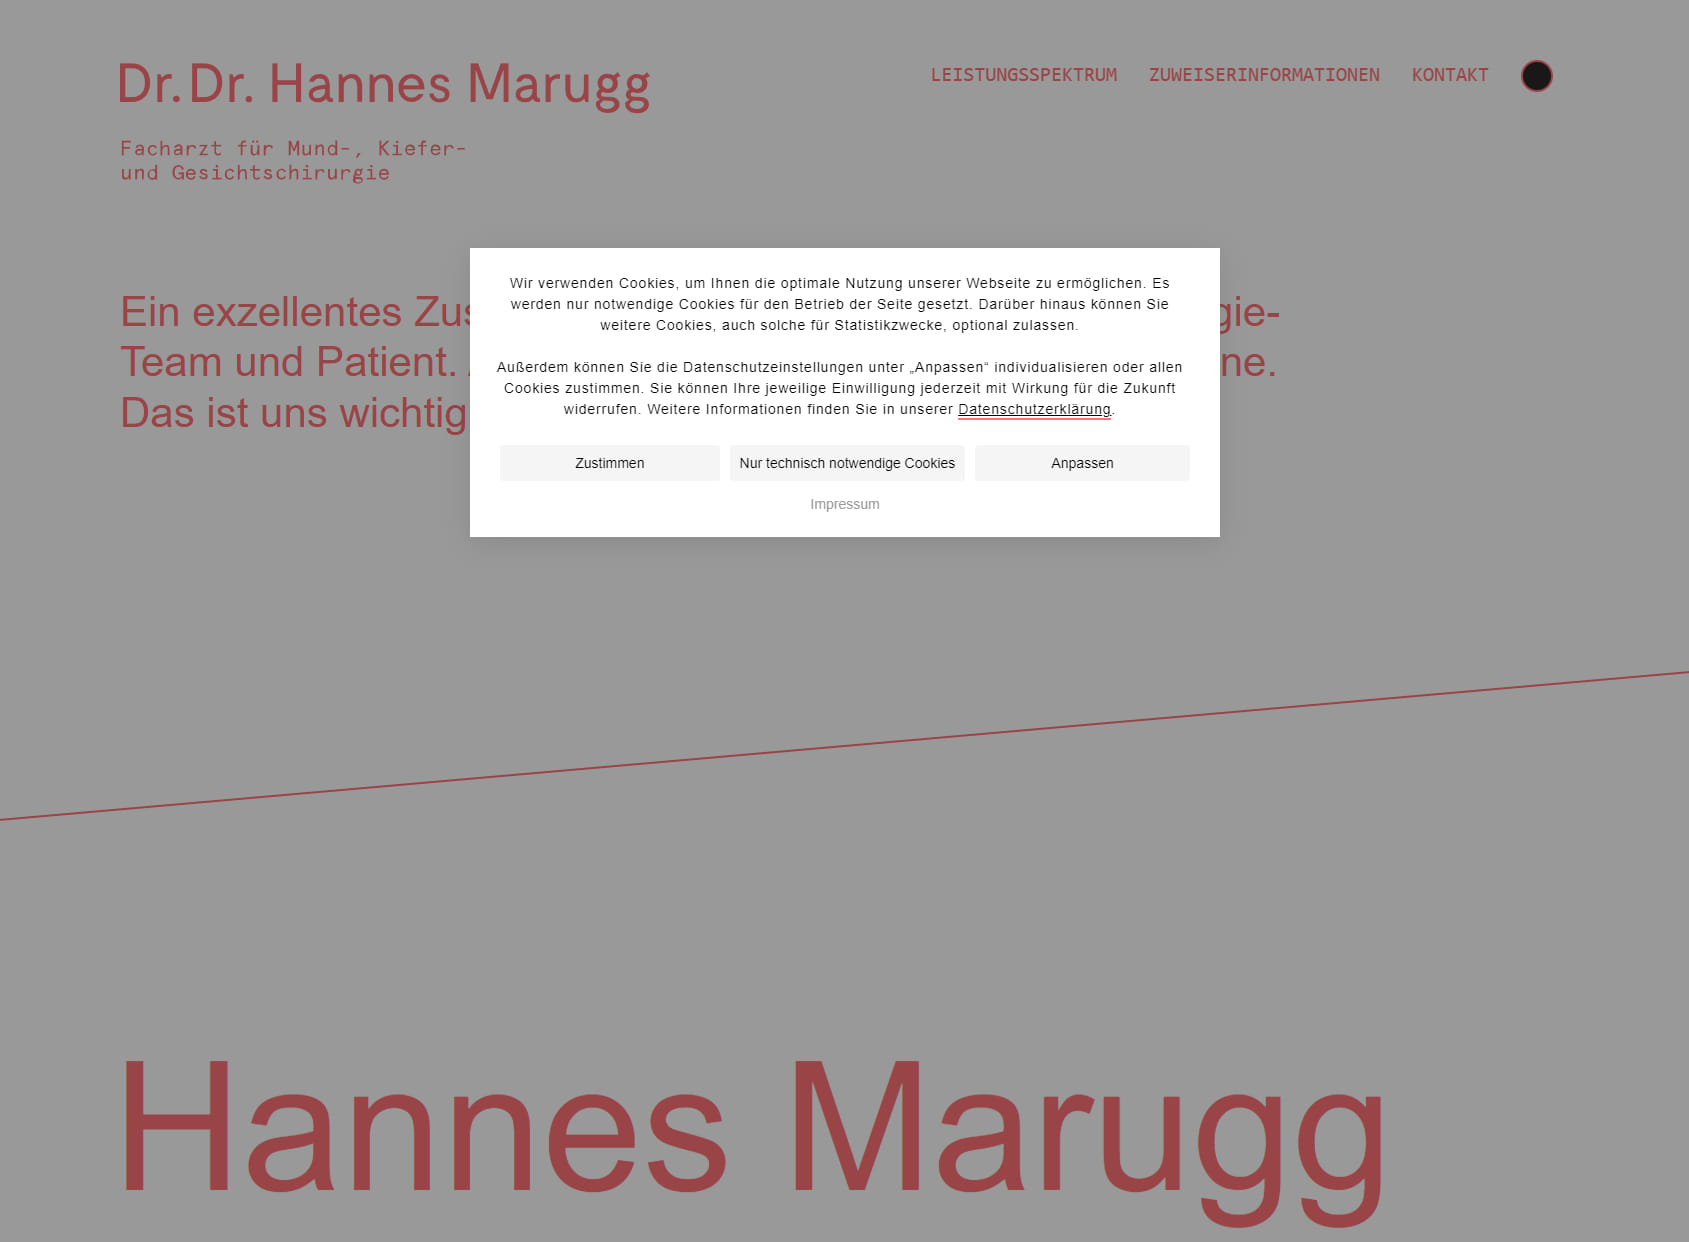 DDr. Hannes Marugg